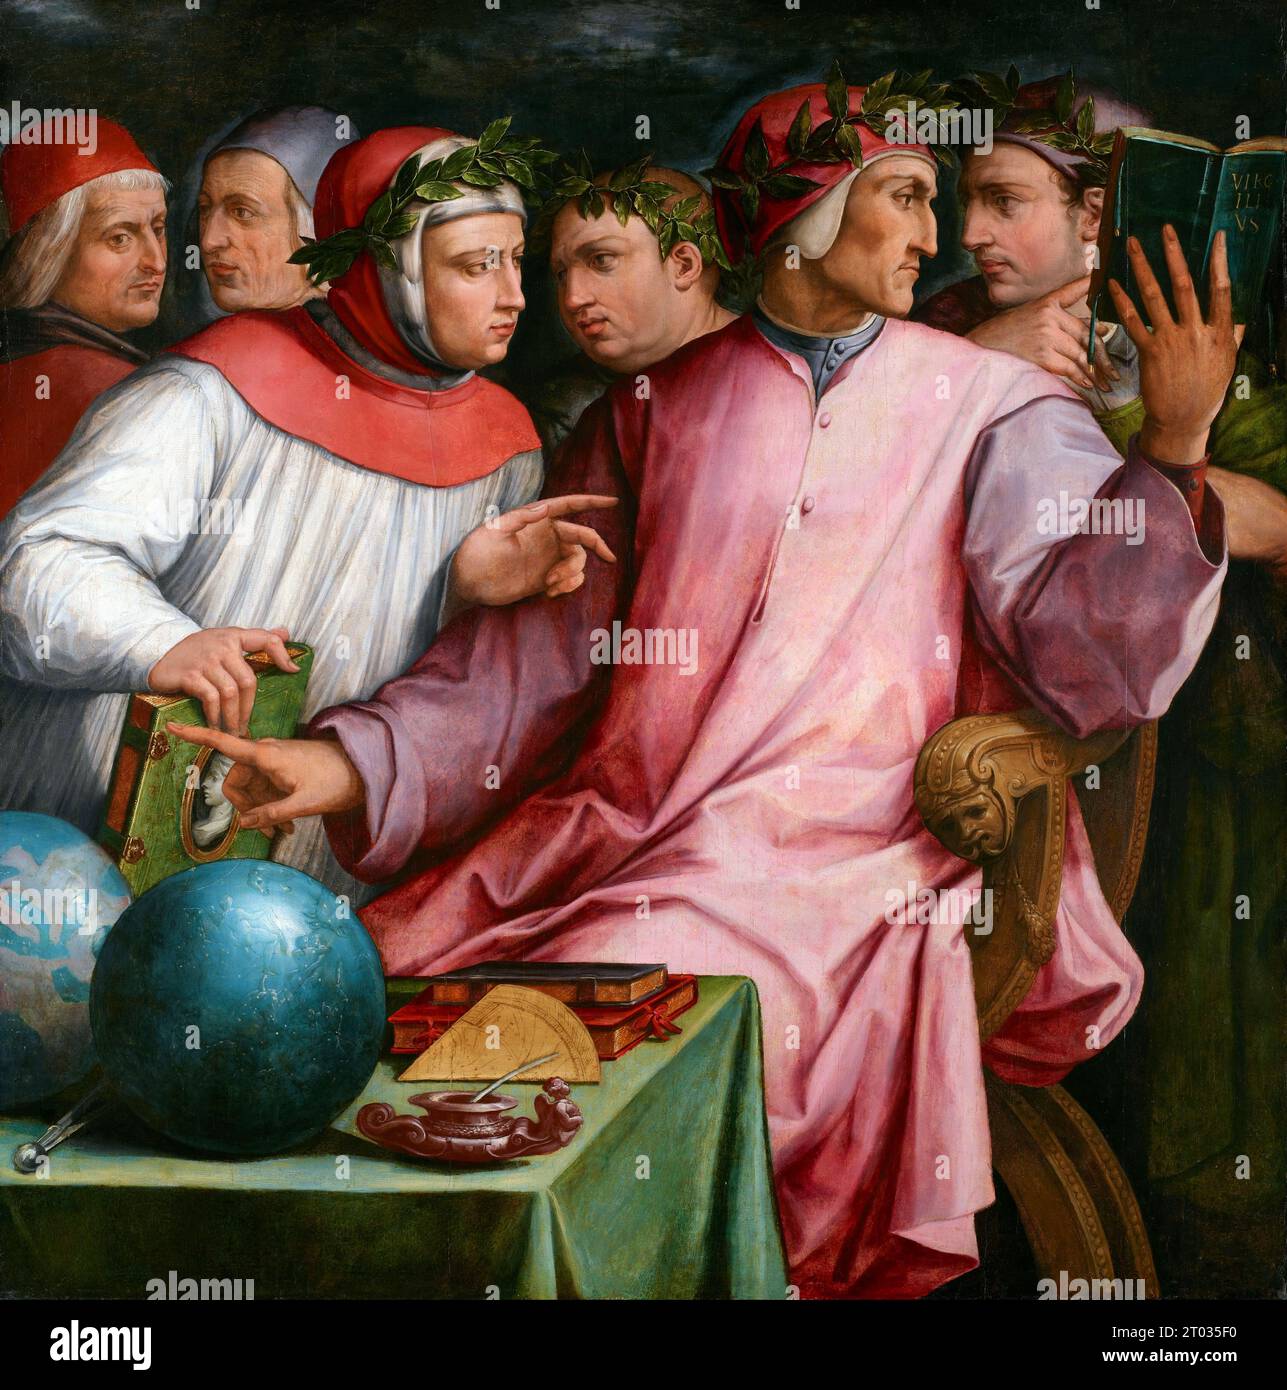 Six Tuscan Poets by Giorgio Vasari, 1544; left to right: Cristoforo Landino, Marsilio Ficino, Francesco Petrarca, Giovanni Boccaccio, Dante Alighieri, and Guido Cavalcanti, Painting by Giorgio Vasari Stock Photo